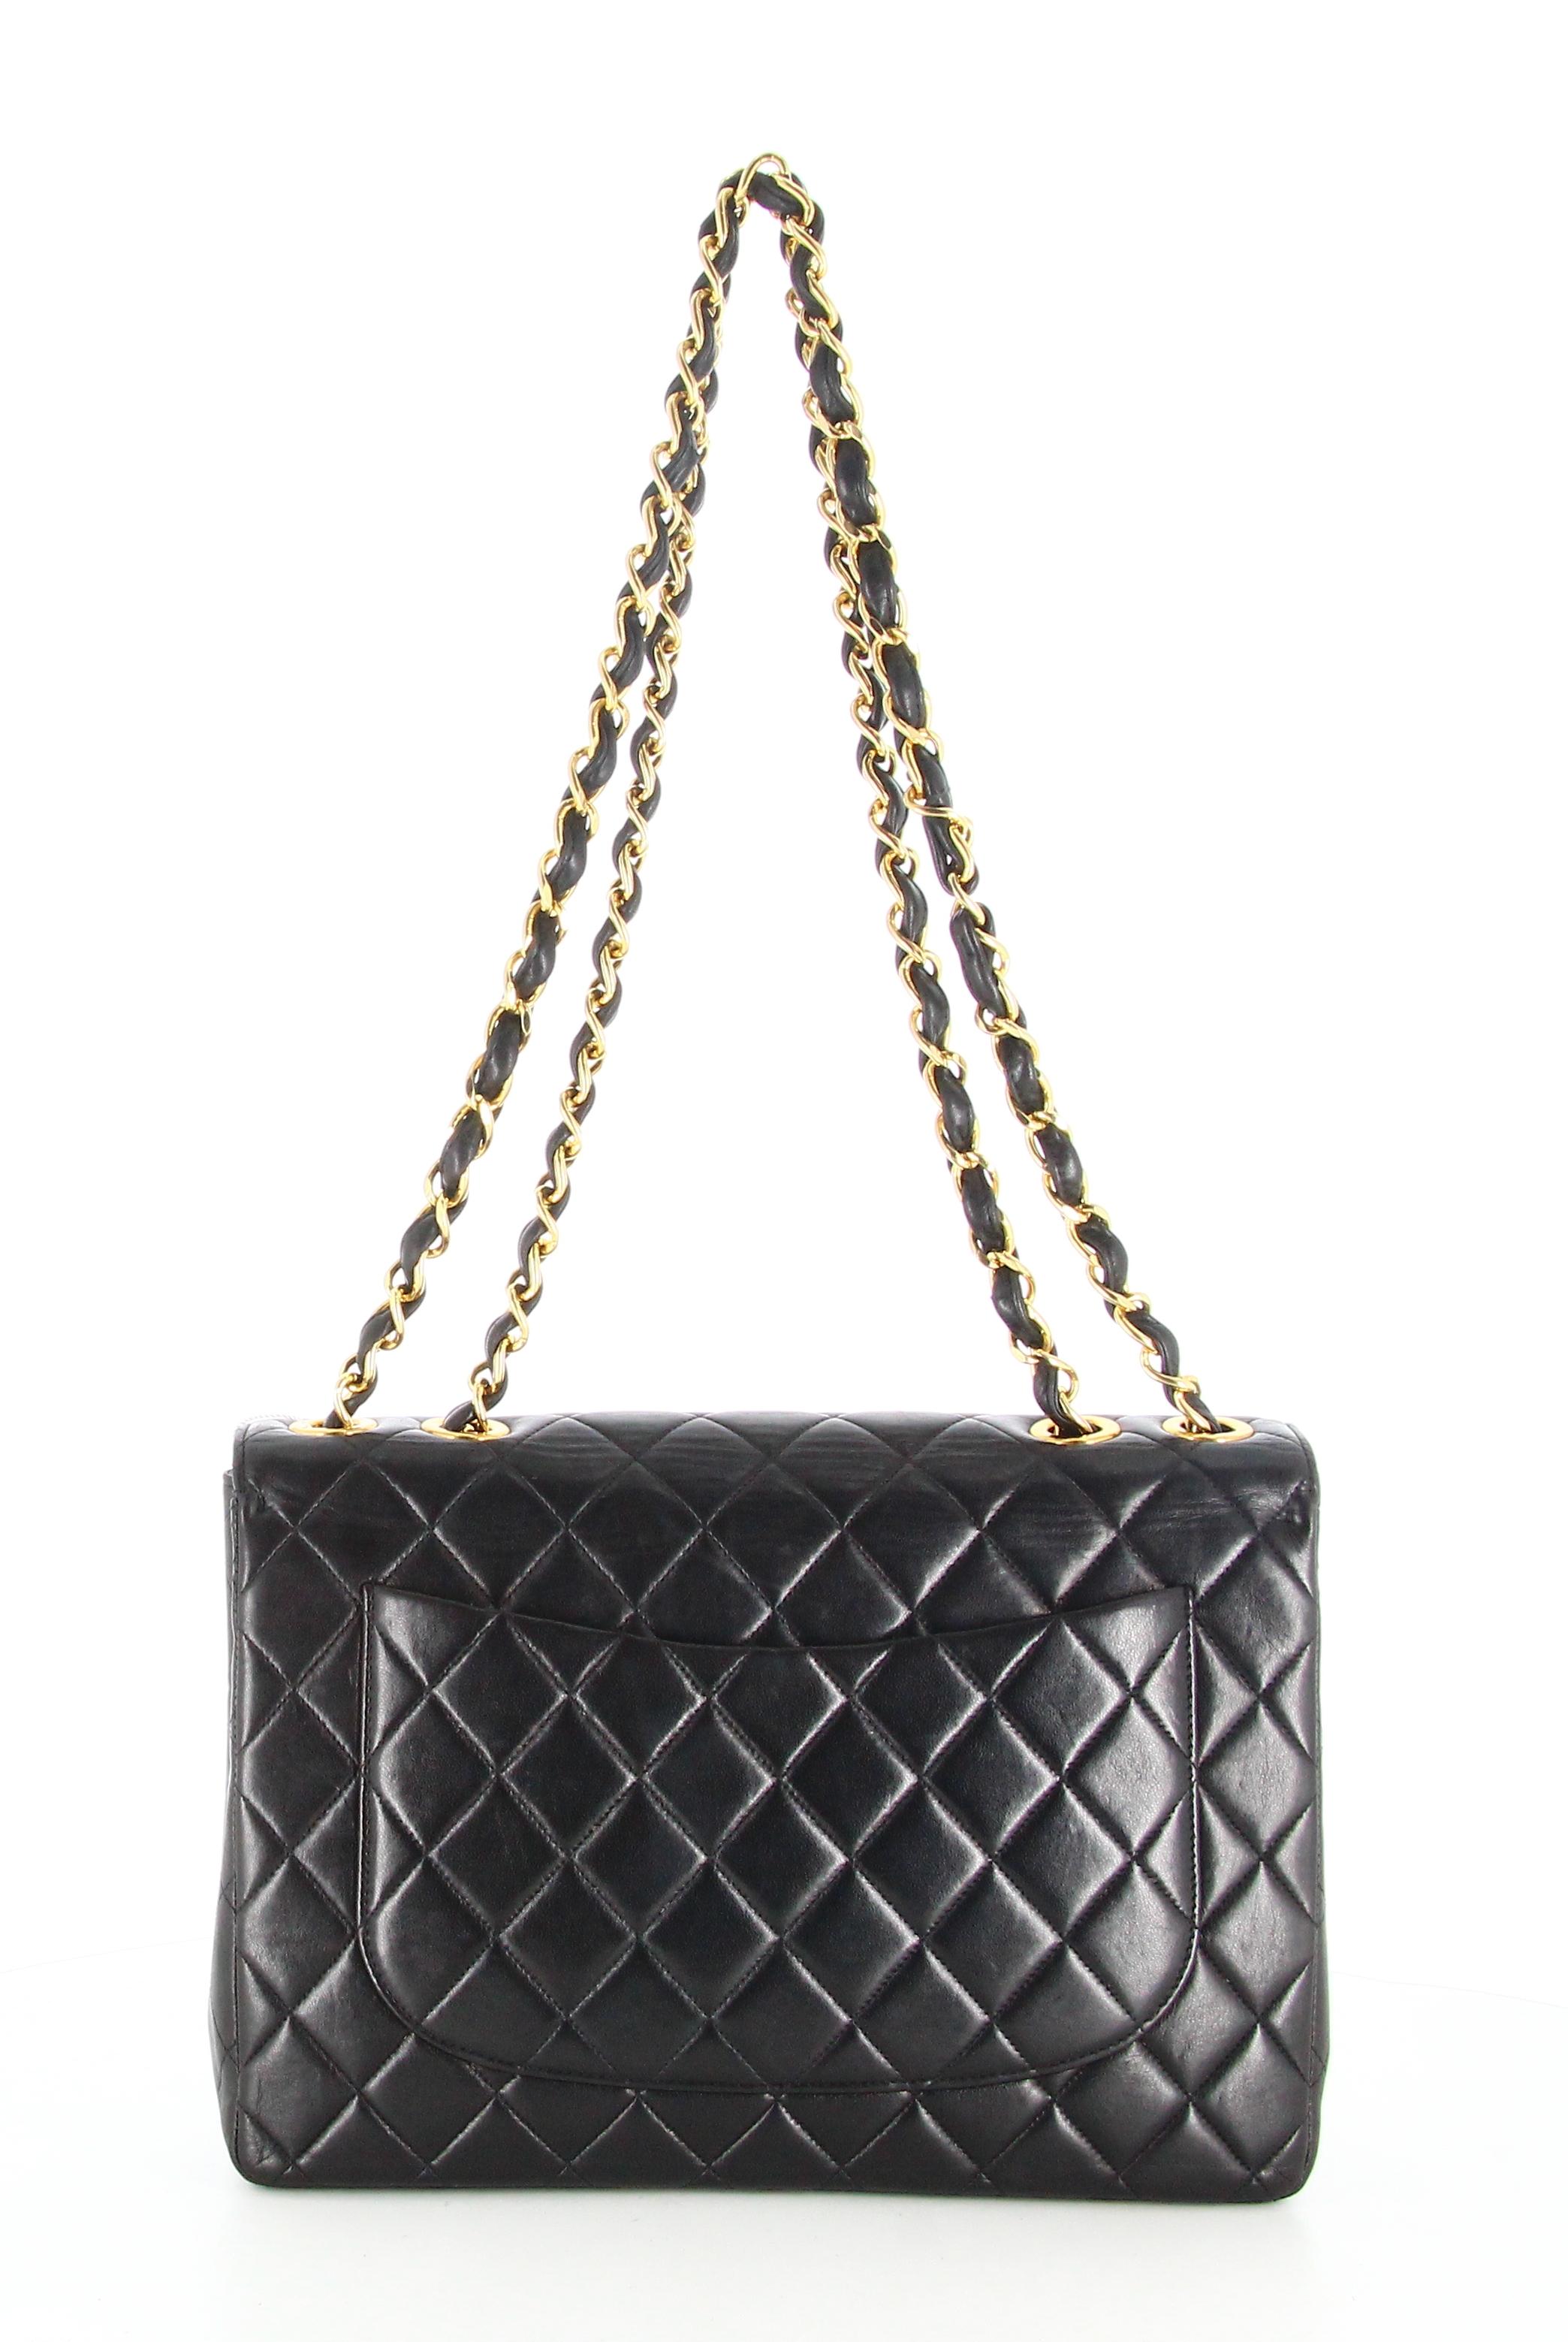 1994 Chanel Timeless Jumbo Quilted Handbag Black Golden 2